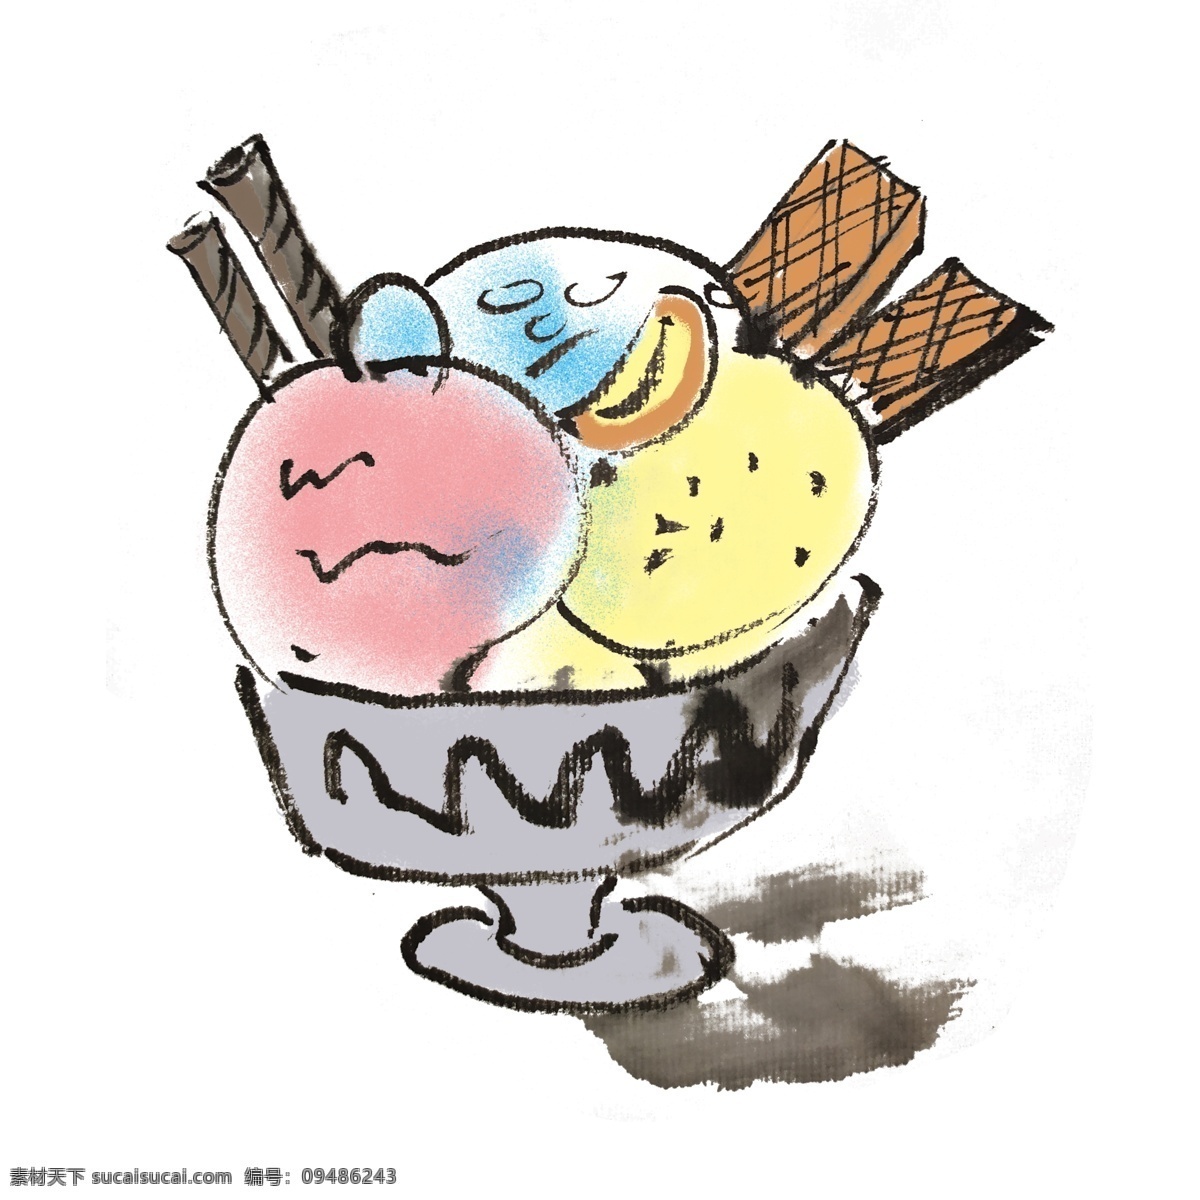 冰淇淋 甜品 手绘 装饰 清凉一夏 奶油 可爱 粉丝 夏季 夏天 中国风 古风 水墨风 墨迹 彩色 插画